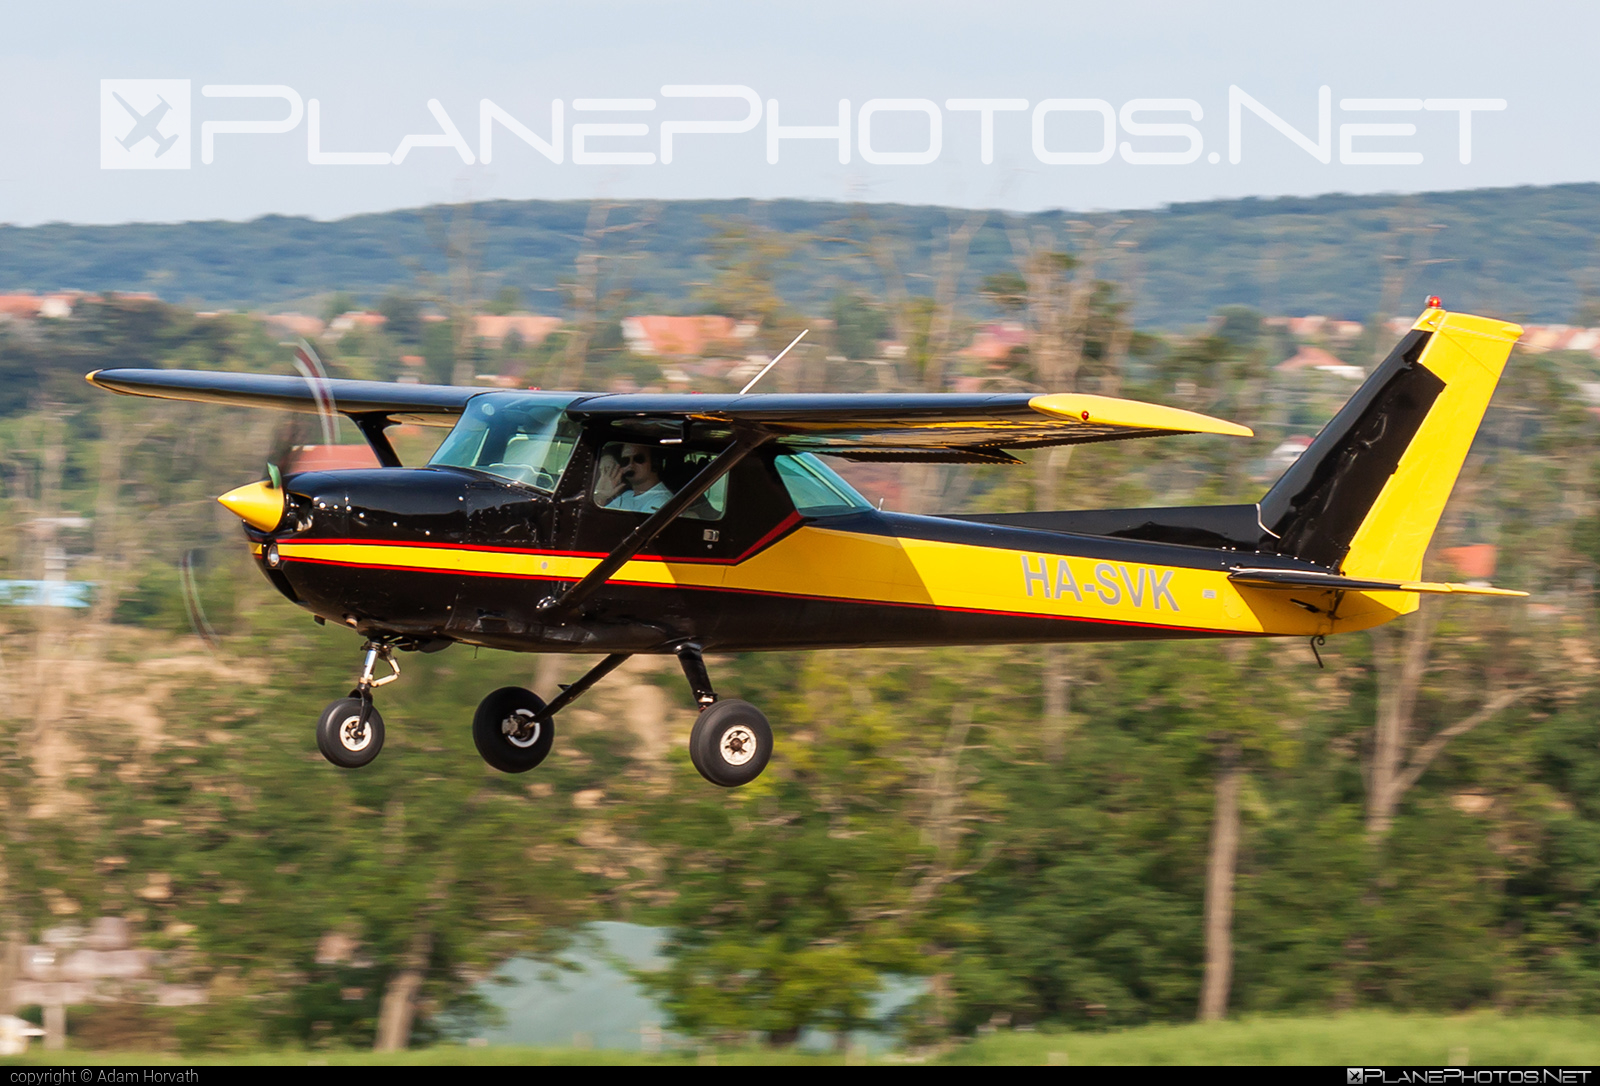 Cessna 150M - HA-SVK operated by Private operator #cessna #cessna150 #cessna150m